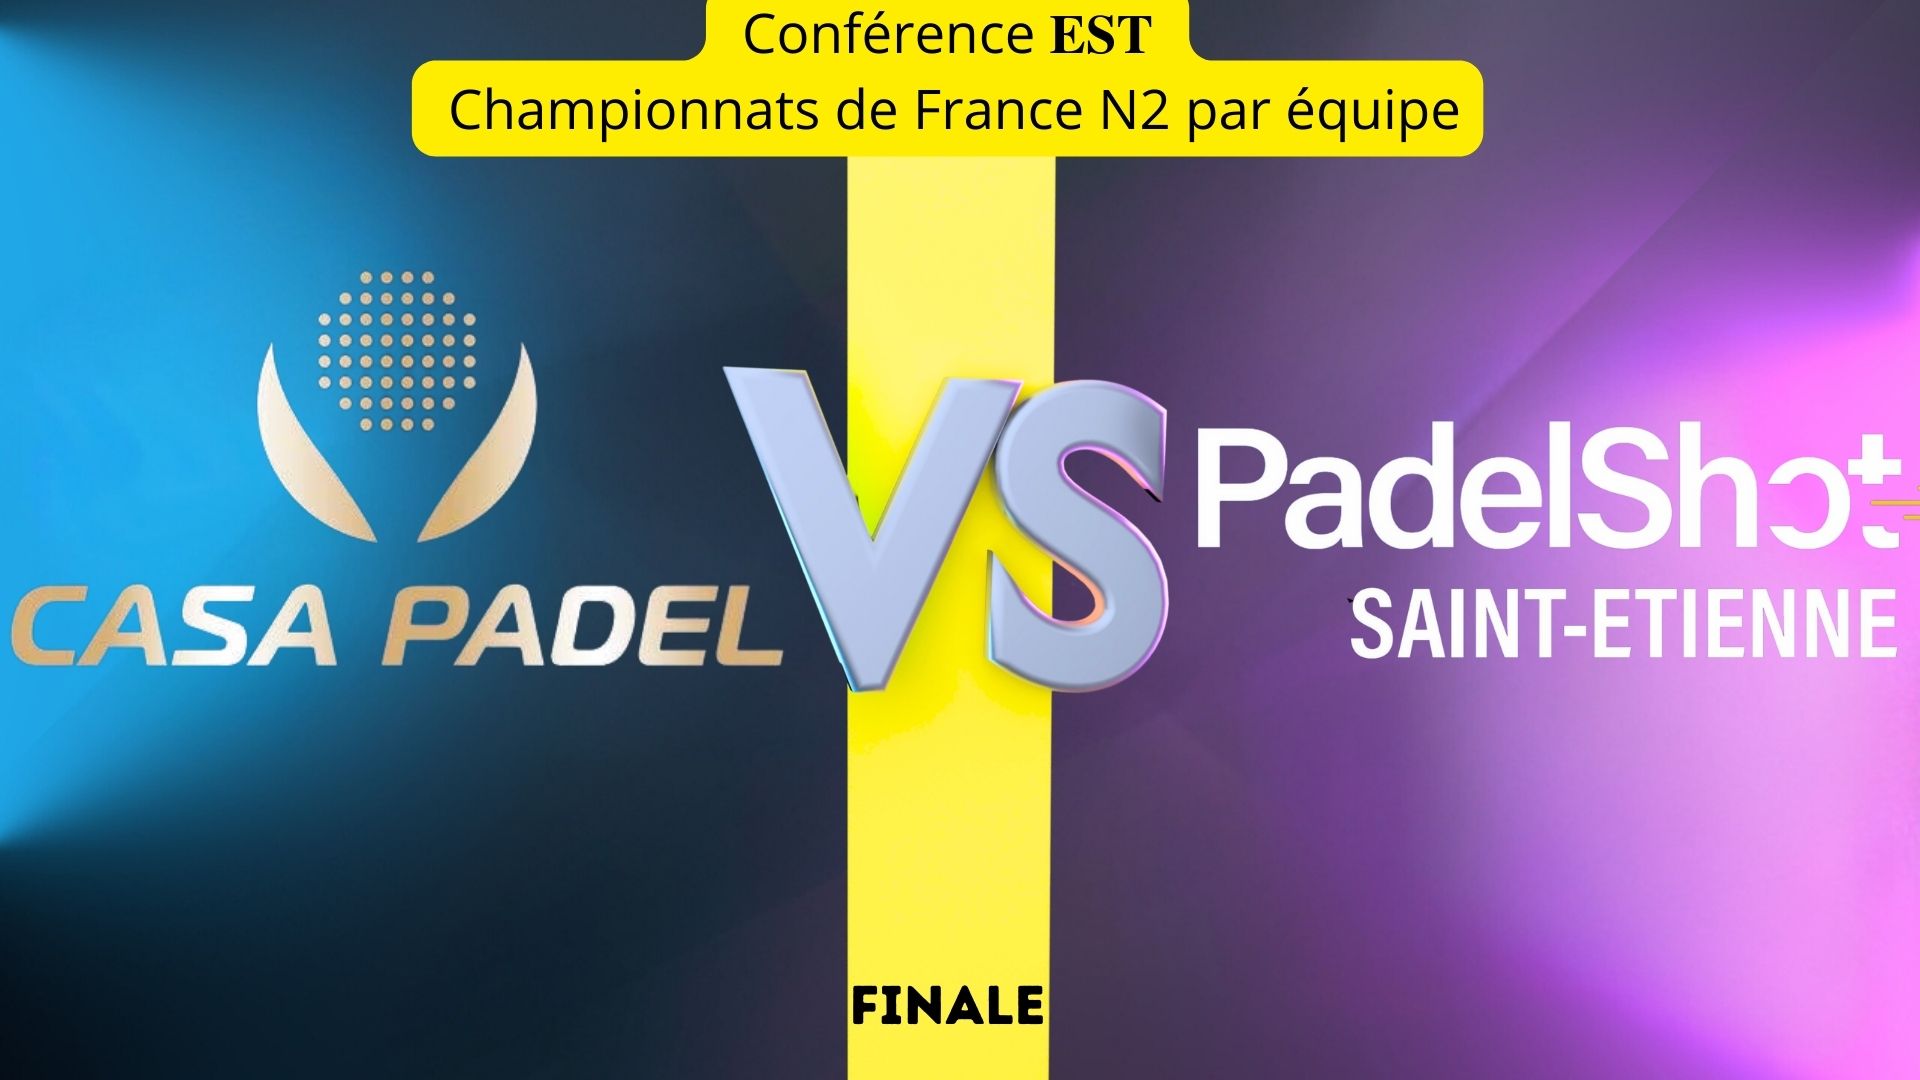 东部决赛：卡萨 Padel vs Padel射击圣艾蒂安